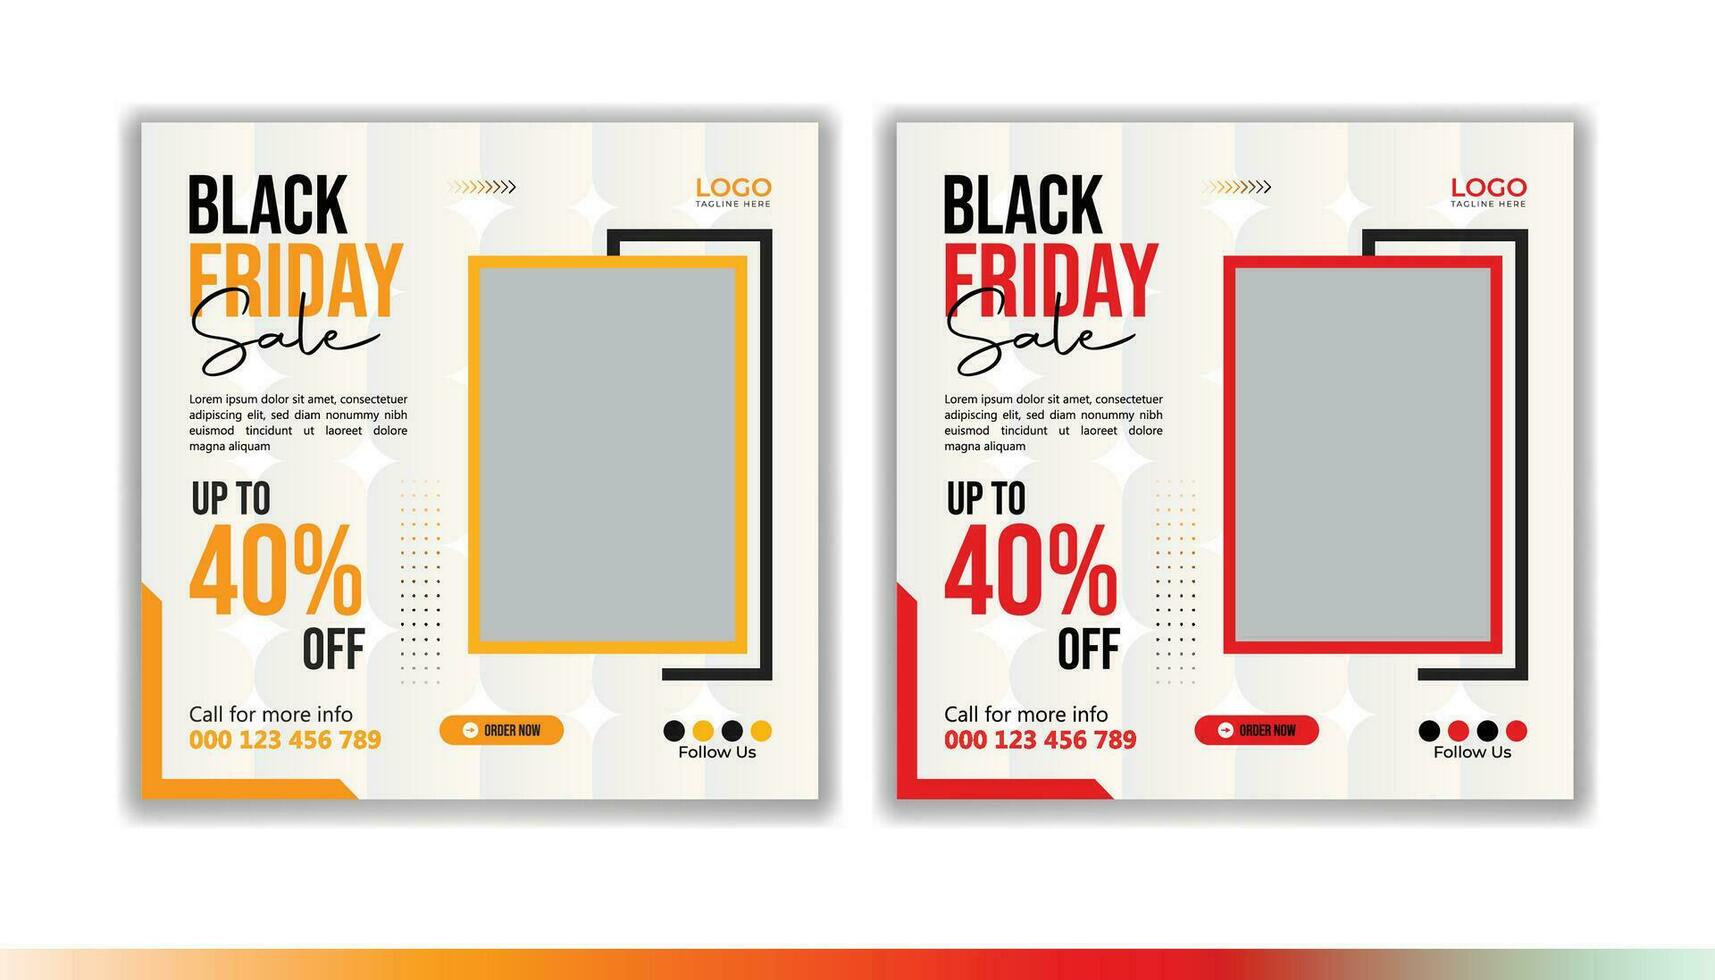 Black Friday sale social media post vector